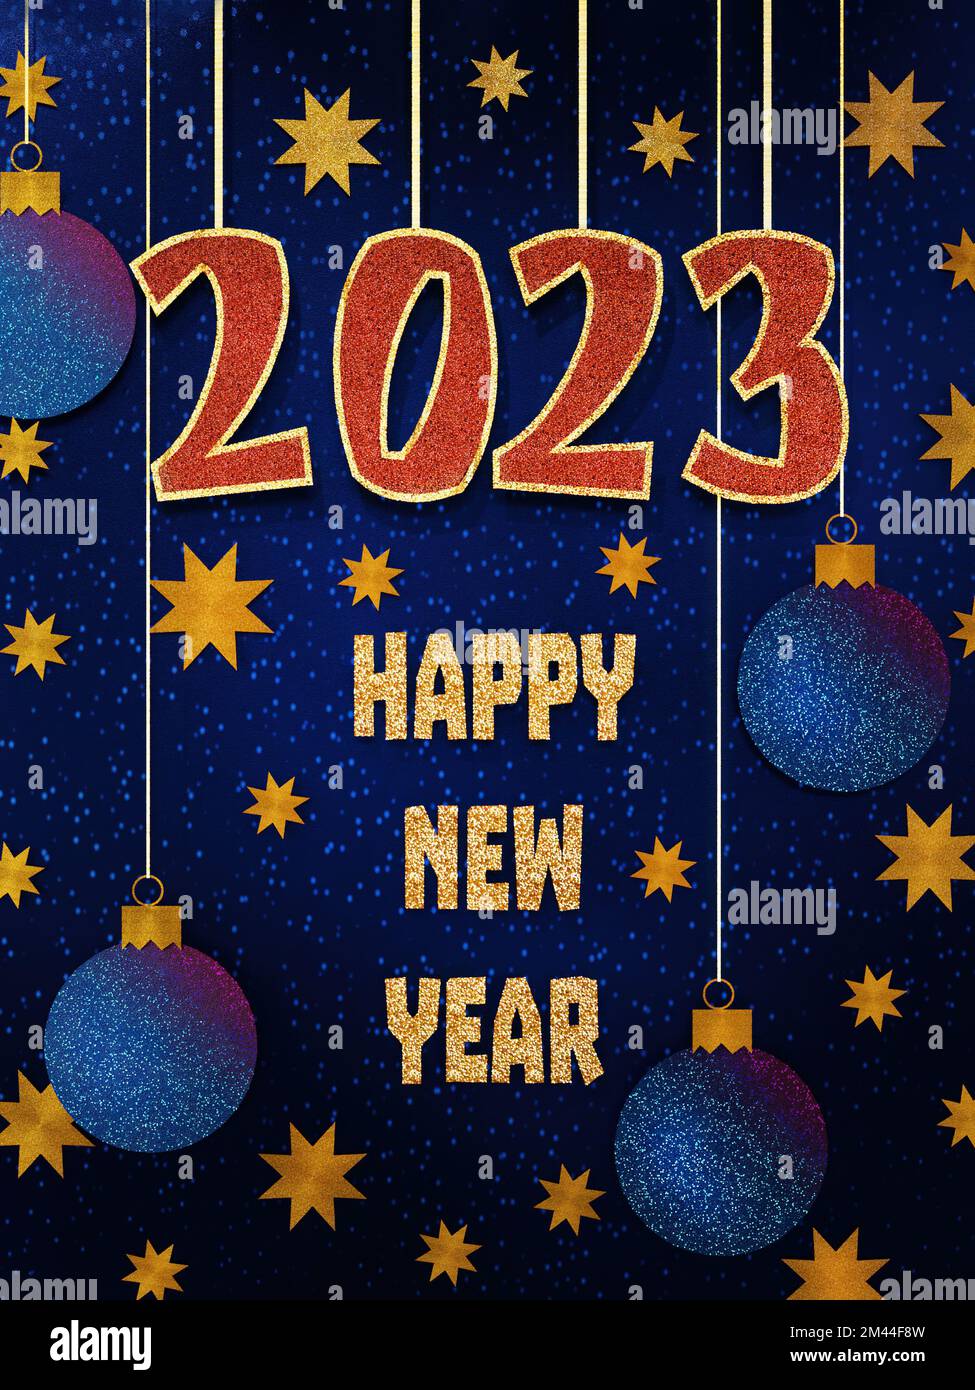 3D rendu de la carte de vœux papier de célébration du nouvel an 2023 Banque D'Images